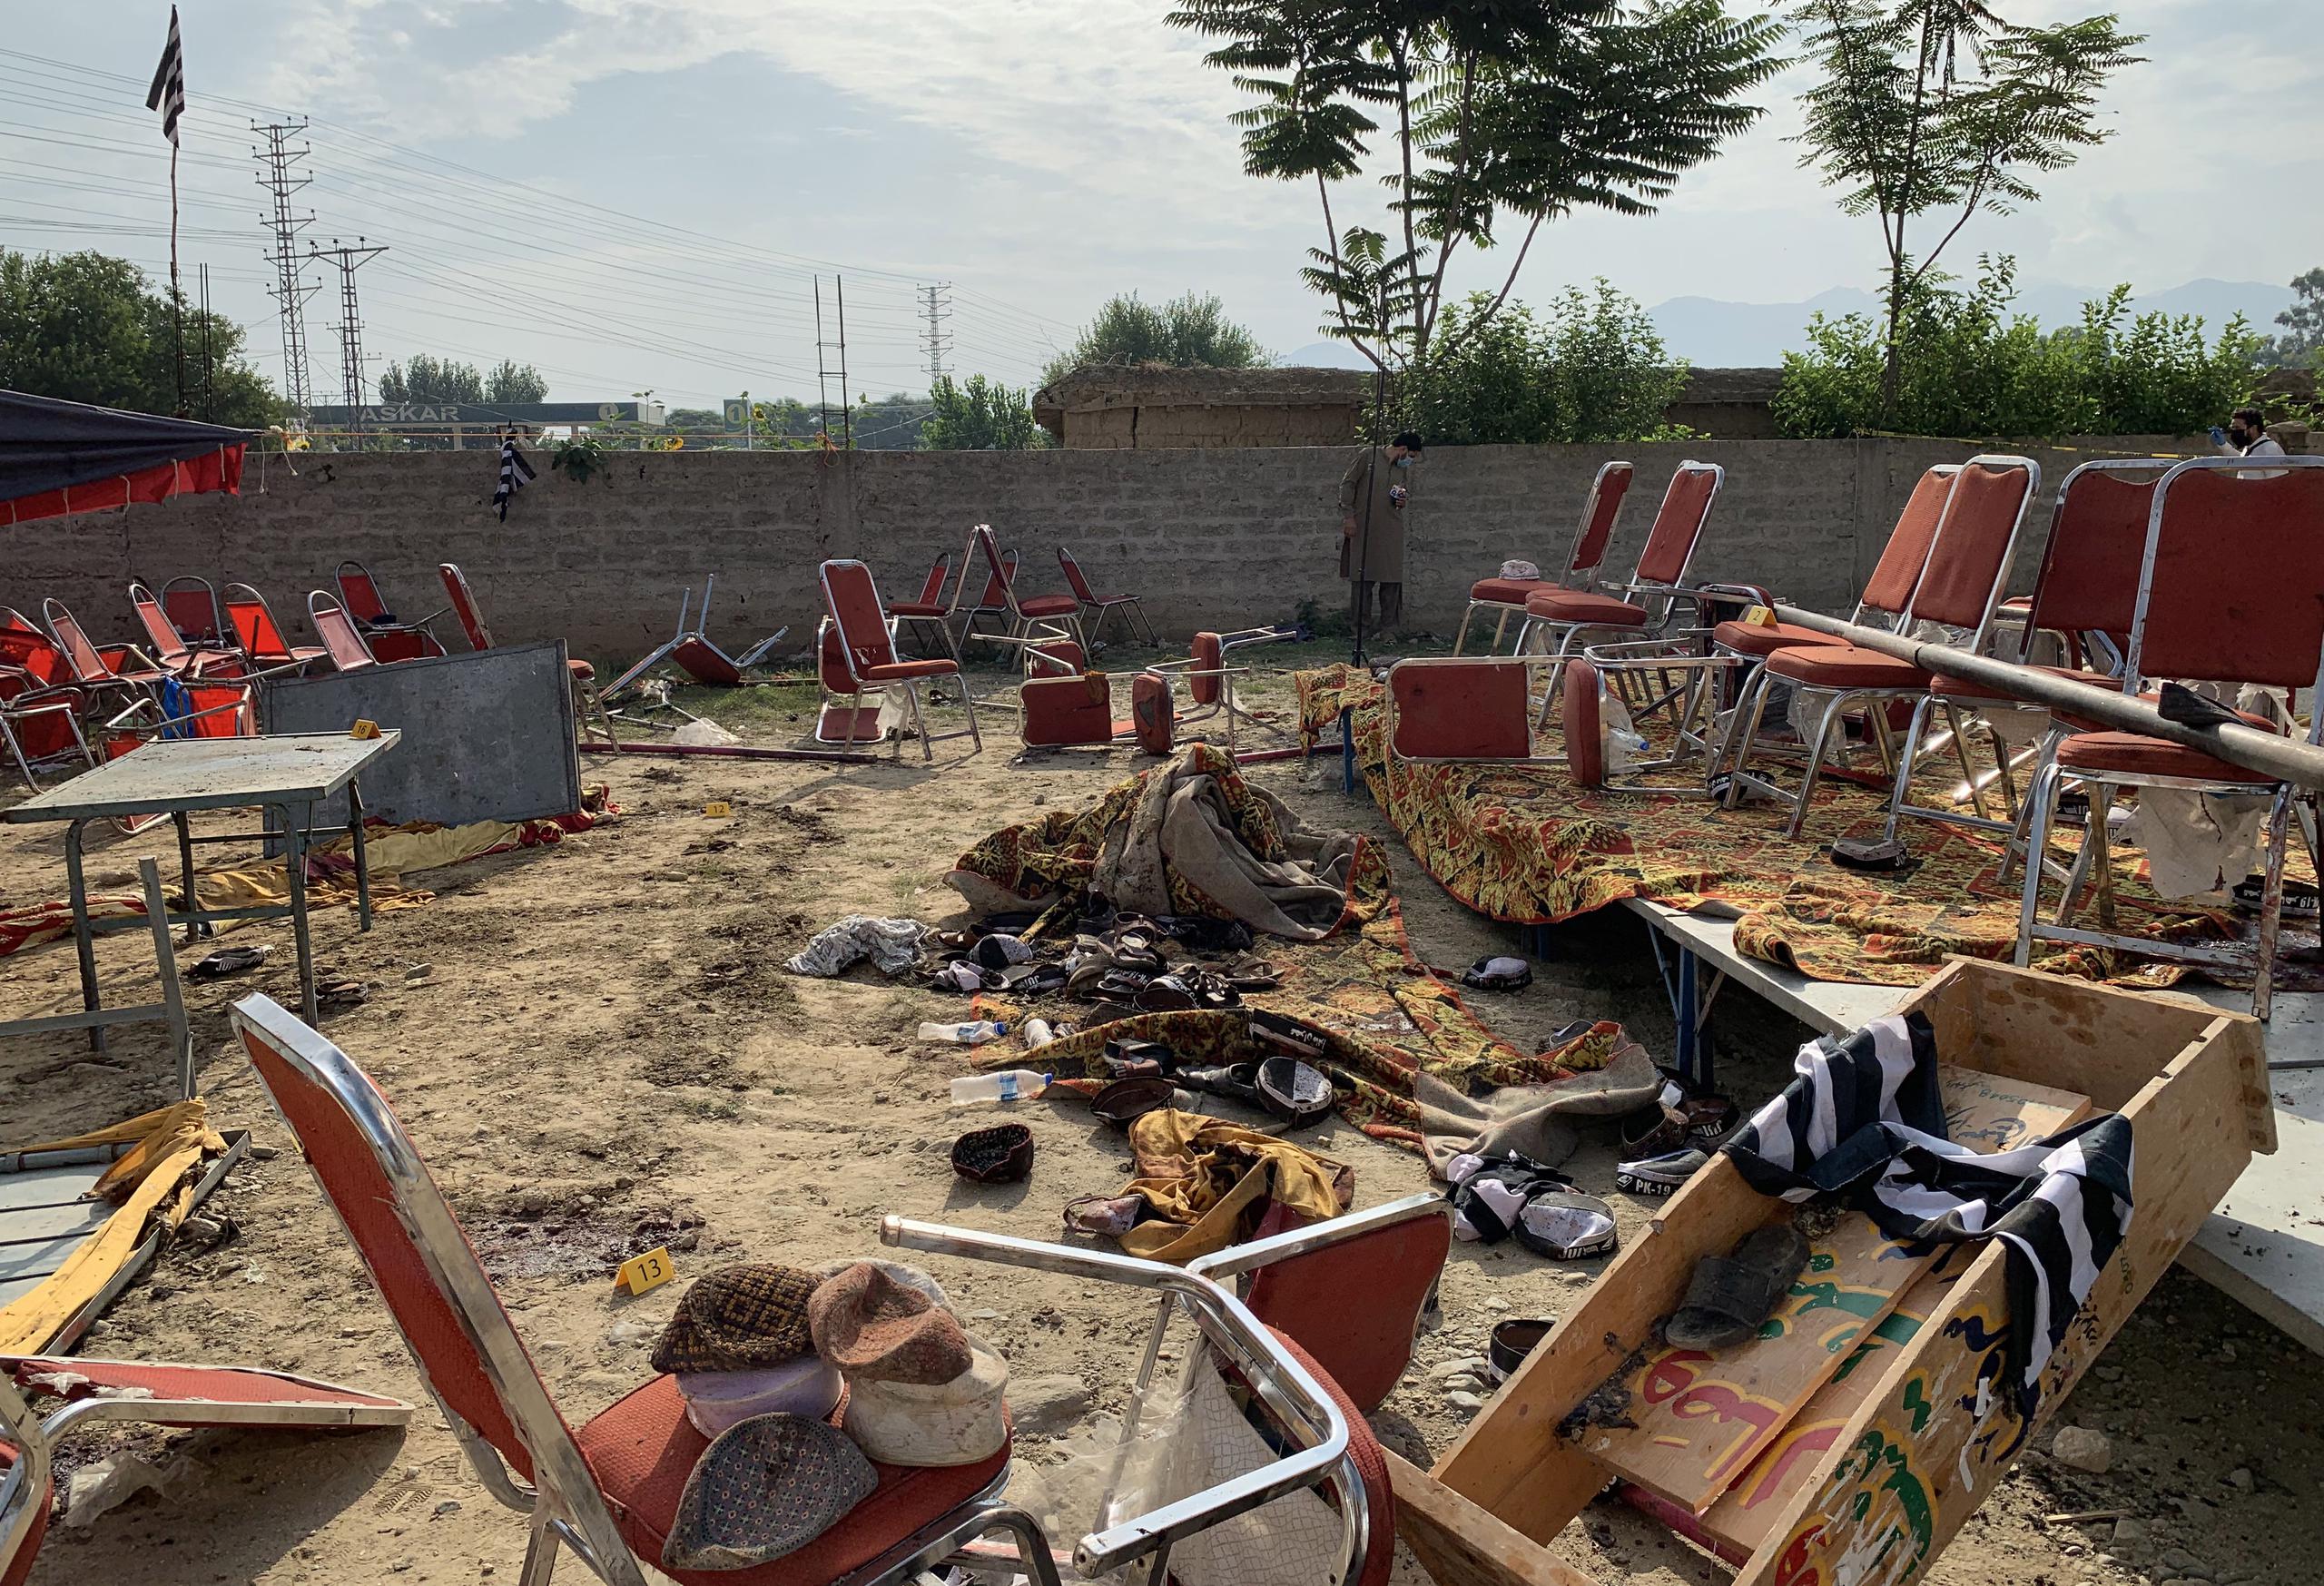 El país fue testigo de 271 ataques militantes durante la primera mitad del año, en los que 389 personas fallecieron y otras 656 resultaron heridas, según un informe publicado a principios de julio por el Instituto de Estudios de Seguridad y Conflictos de Pakistán.